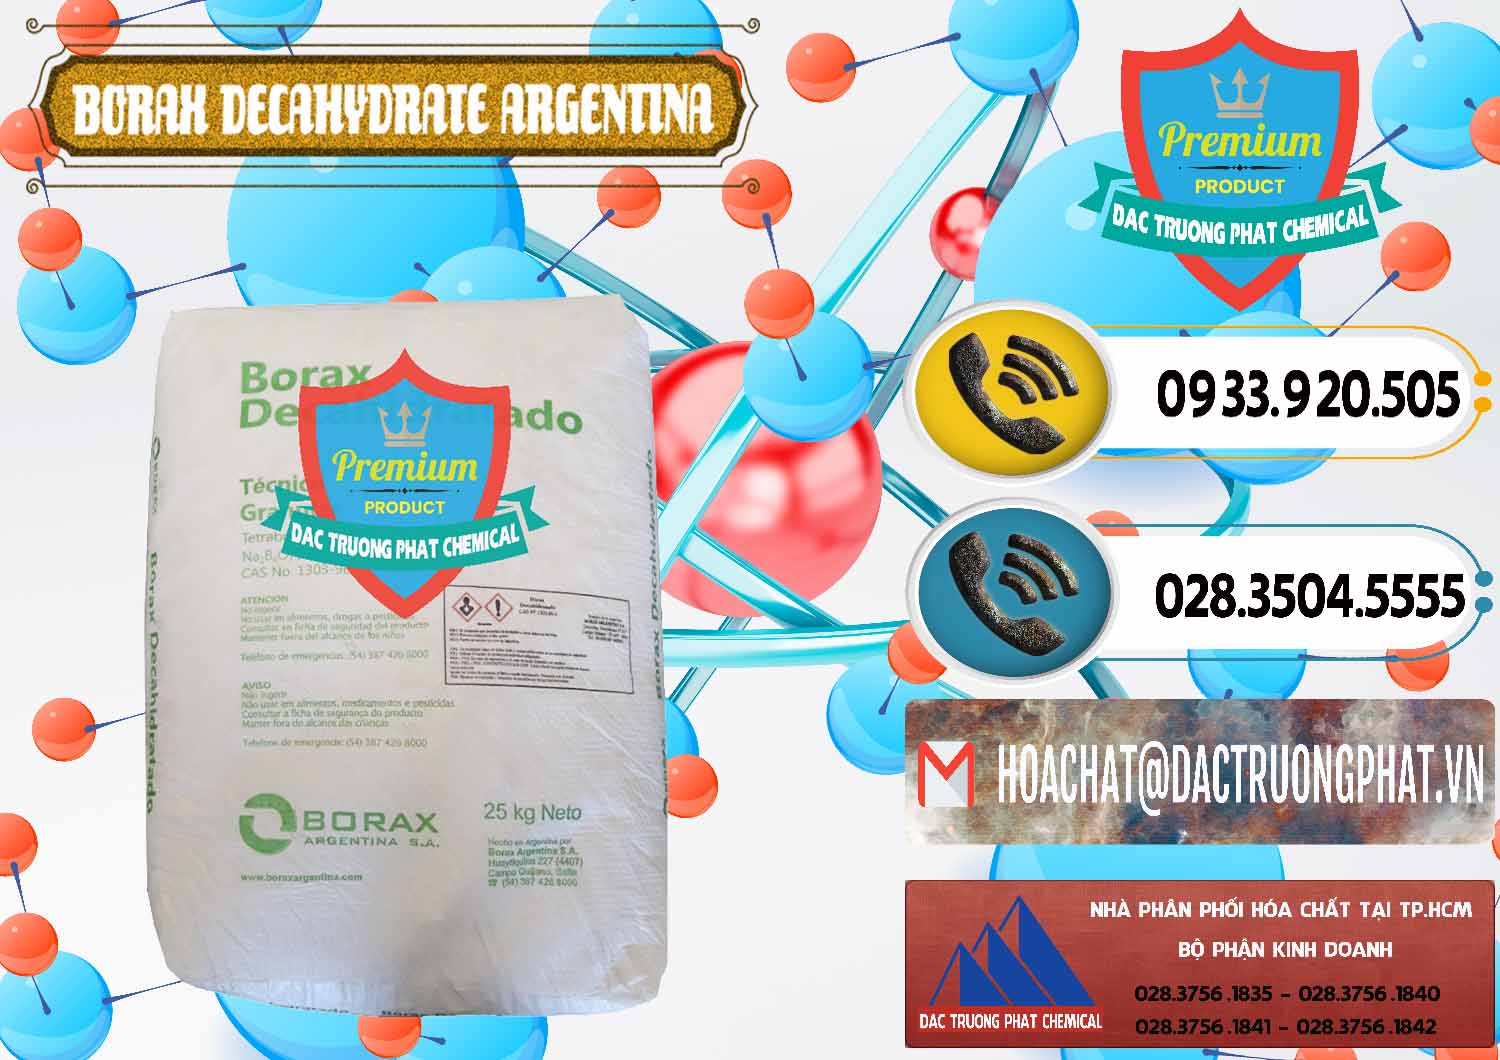 Đơn vị nhập khẩu ( bán ) Borax Decahydrate Argentina - 0446 - Cty chuyên nhập khẩu ( phân phối ) hóa chất tại TP.HCM - hoachatdetnhuom.vn